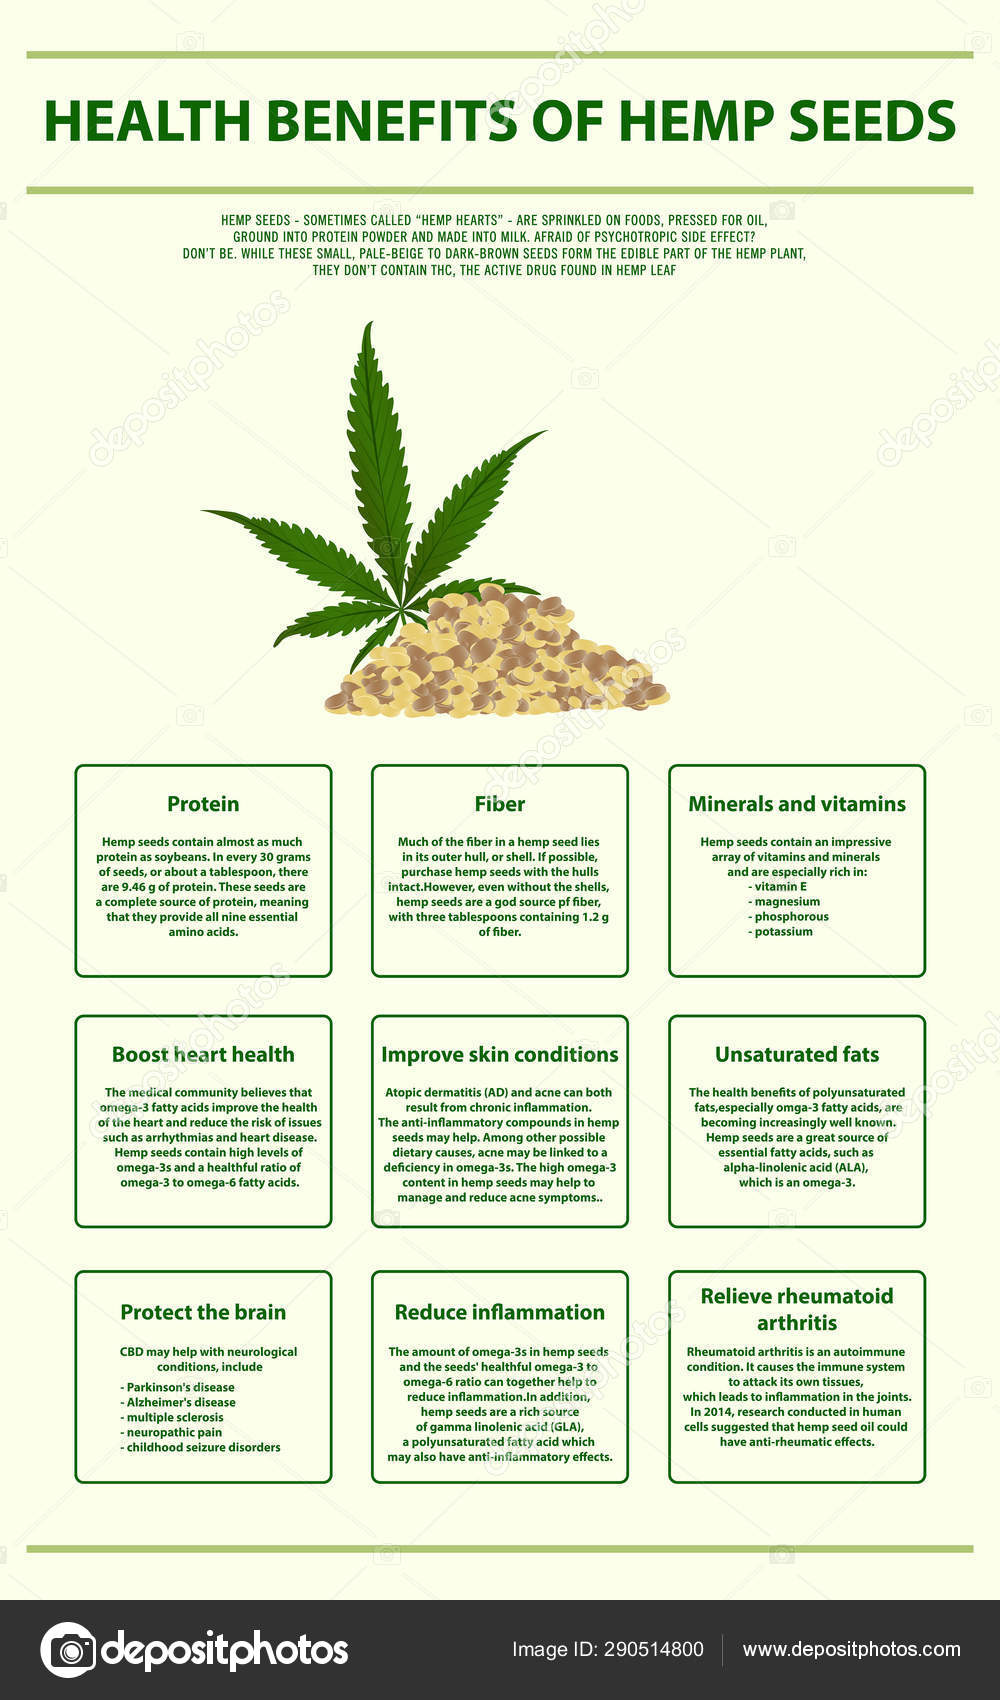 Семя конопли лечебные свойства результаты исследования марихуаны